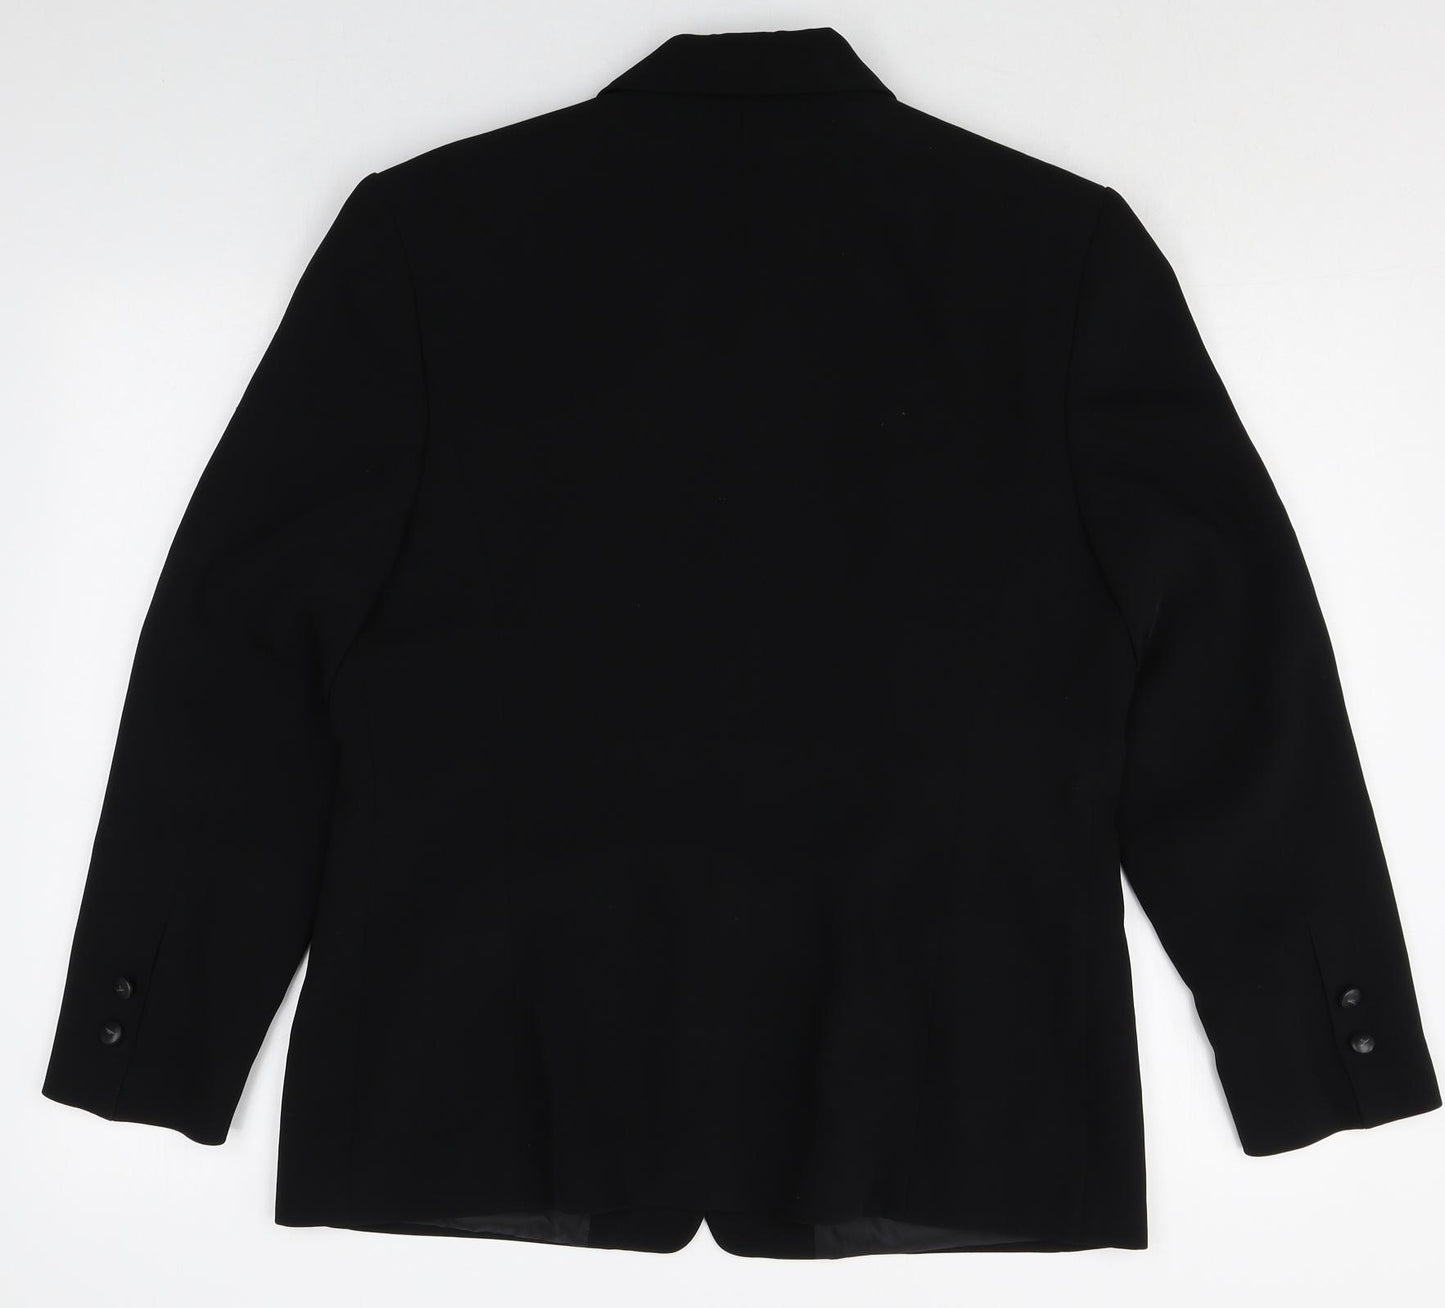 Marcona Womens Black Polyester Jacket Suit Jacket Size 14